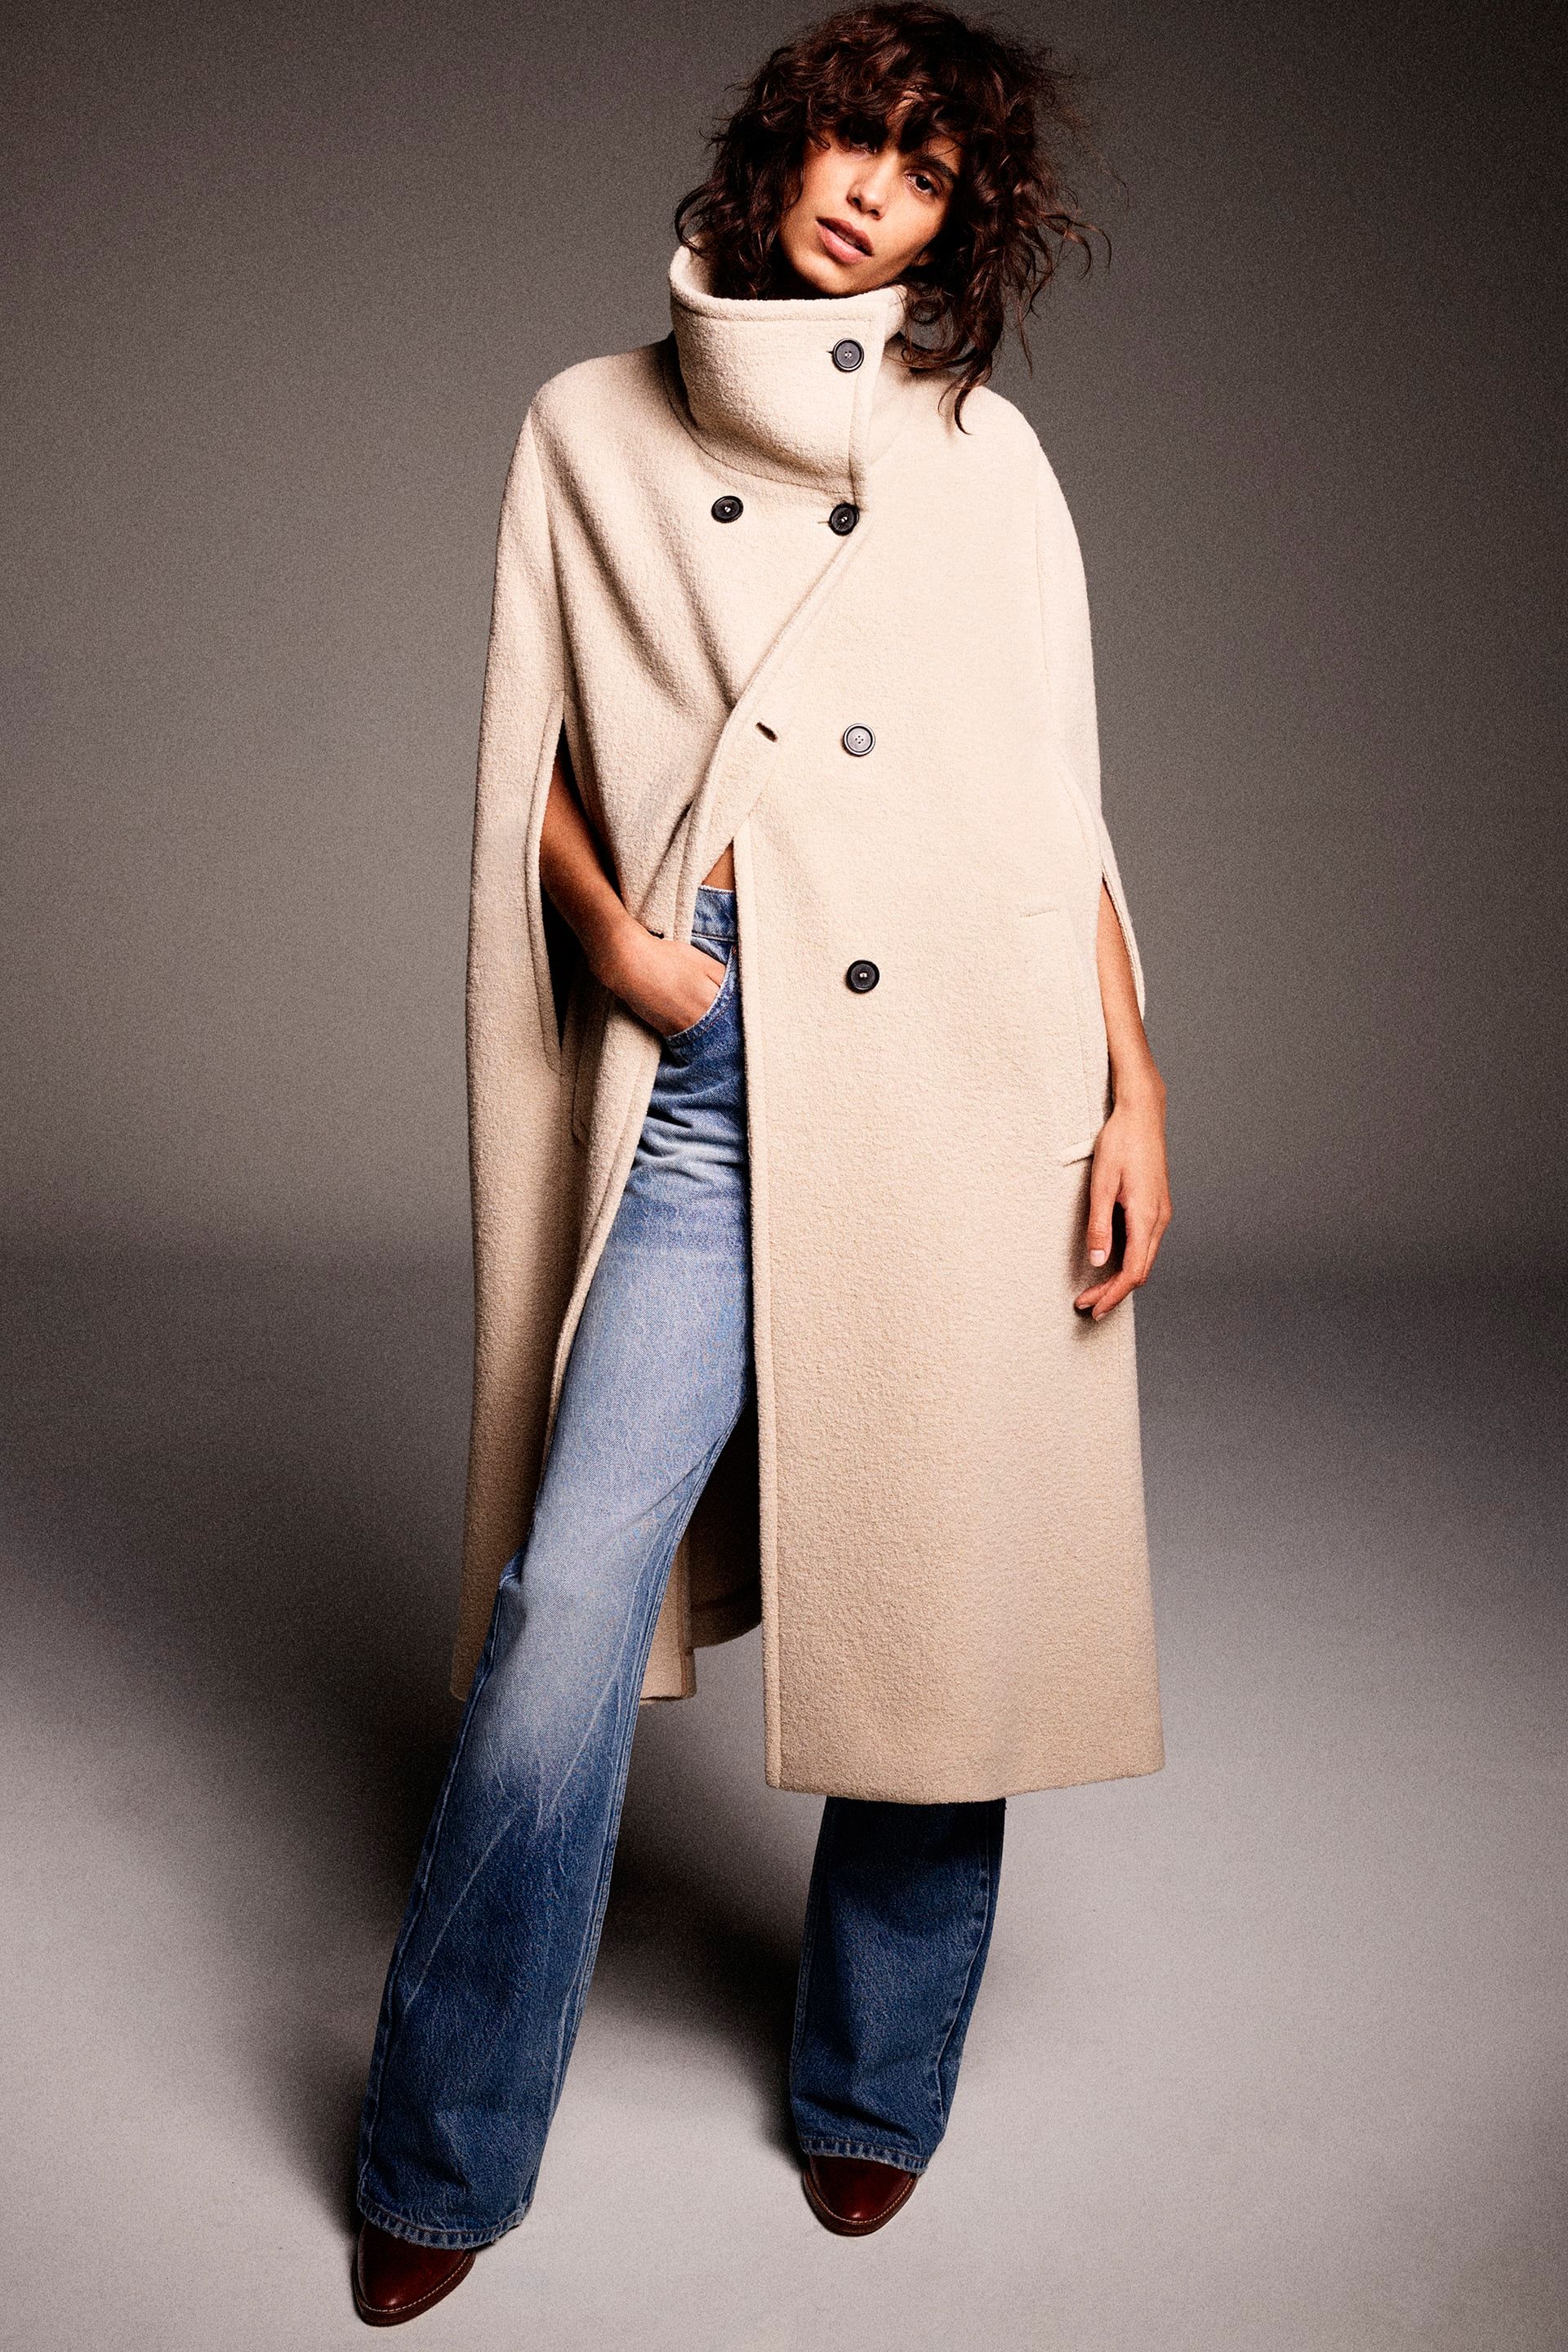 Ni acolchado ni efecto piel, el abrigo más original y calentito es este de  punto de Zara con el que rejuvenecer tus looks a los 50